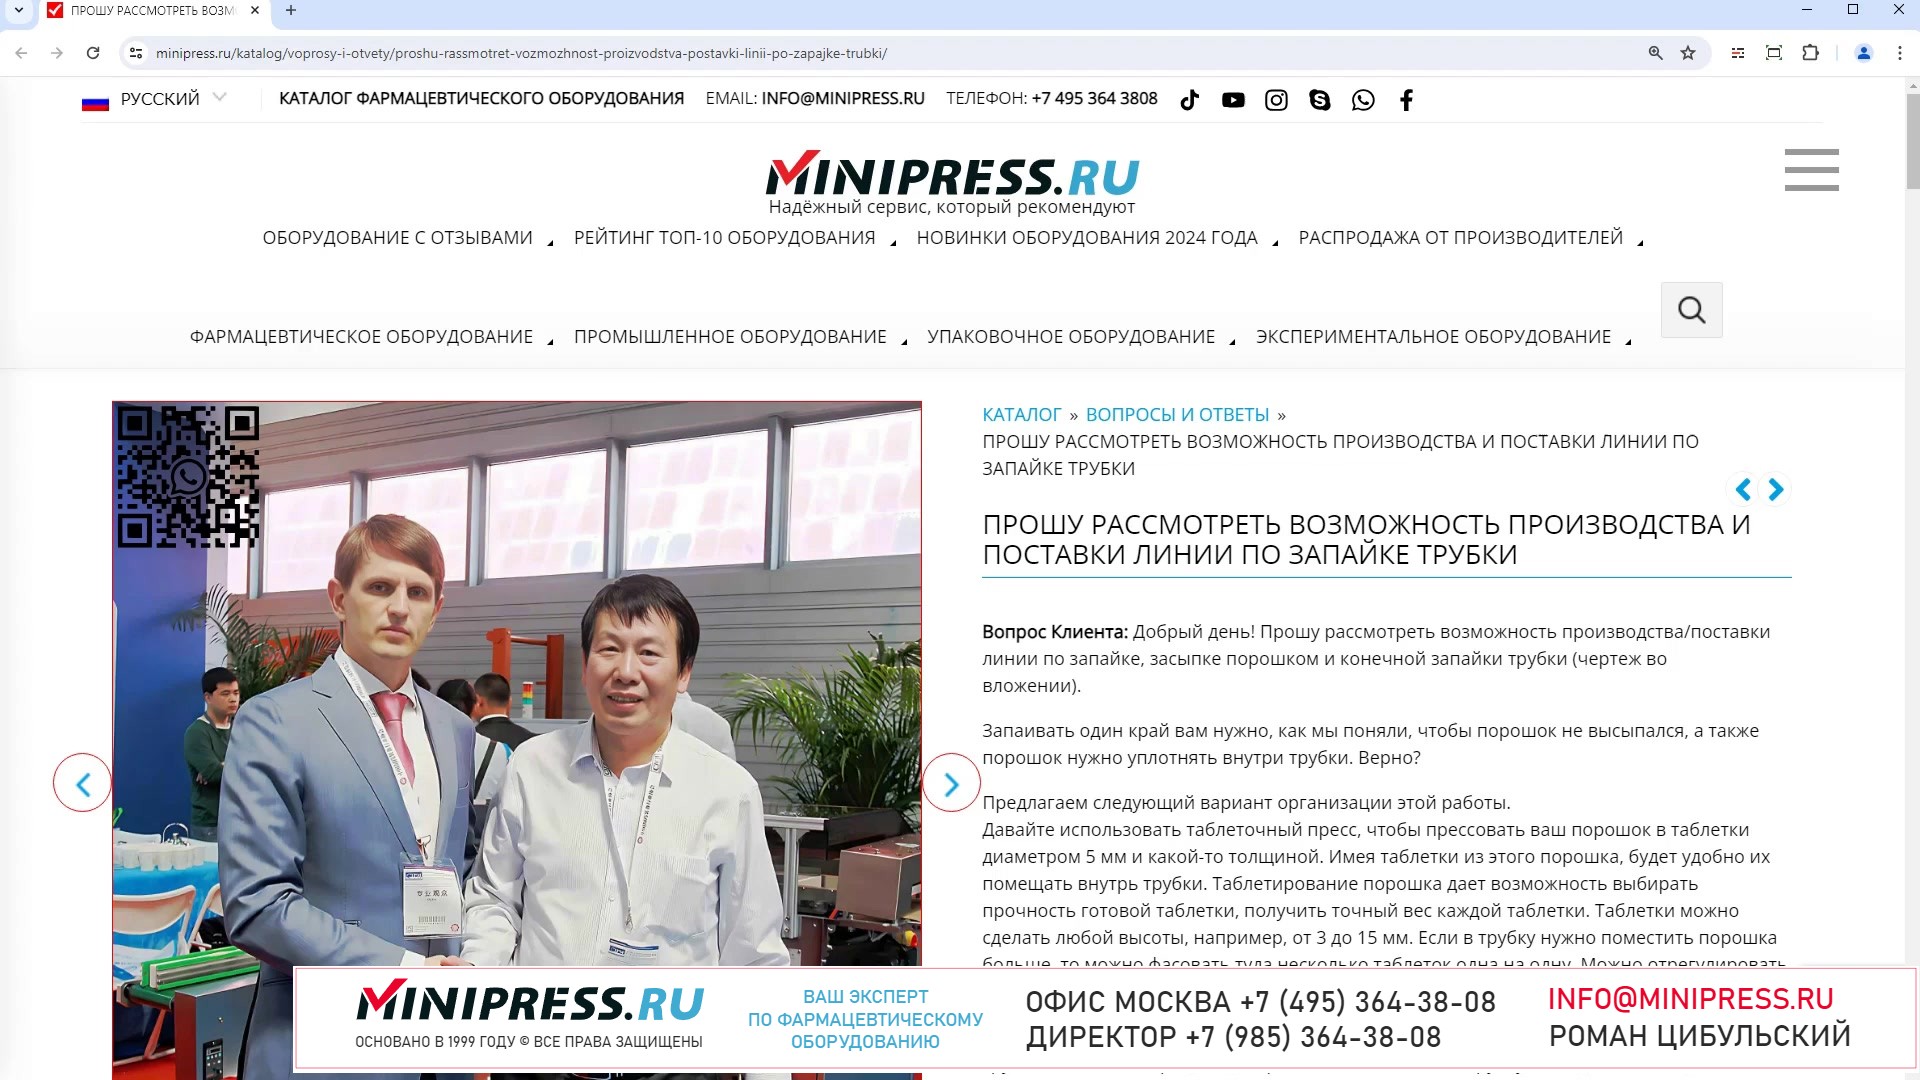 Minipress.ru Прошу рассмотреть возможность производства и поставки линии по запайке трубки